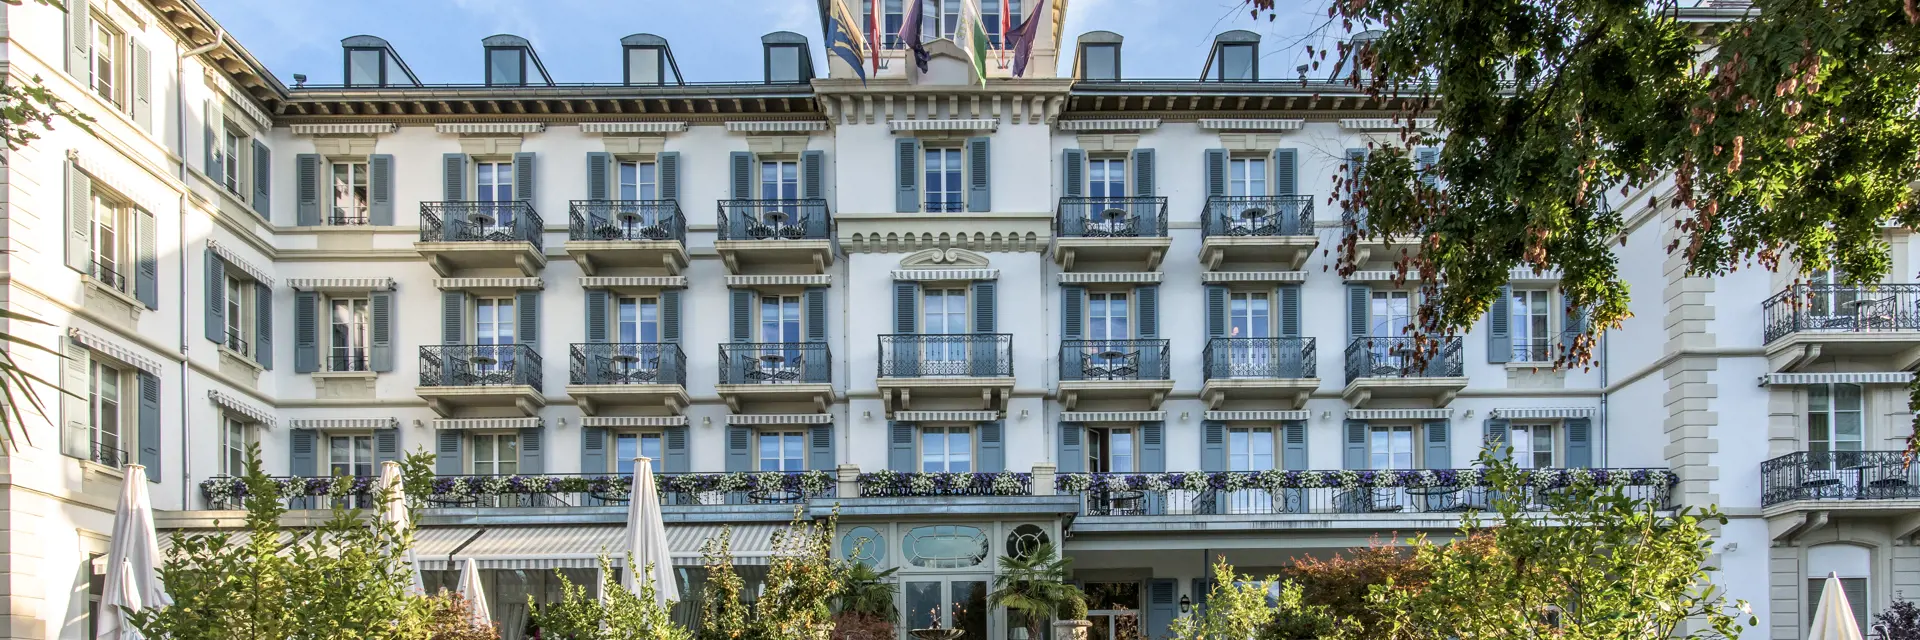 Grand Hotel Du Lac